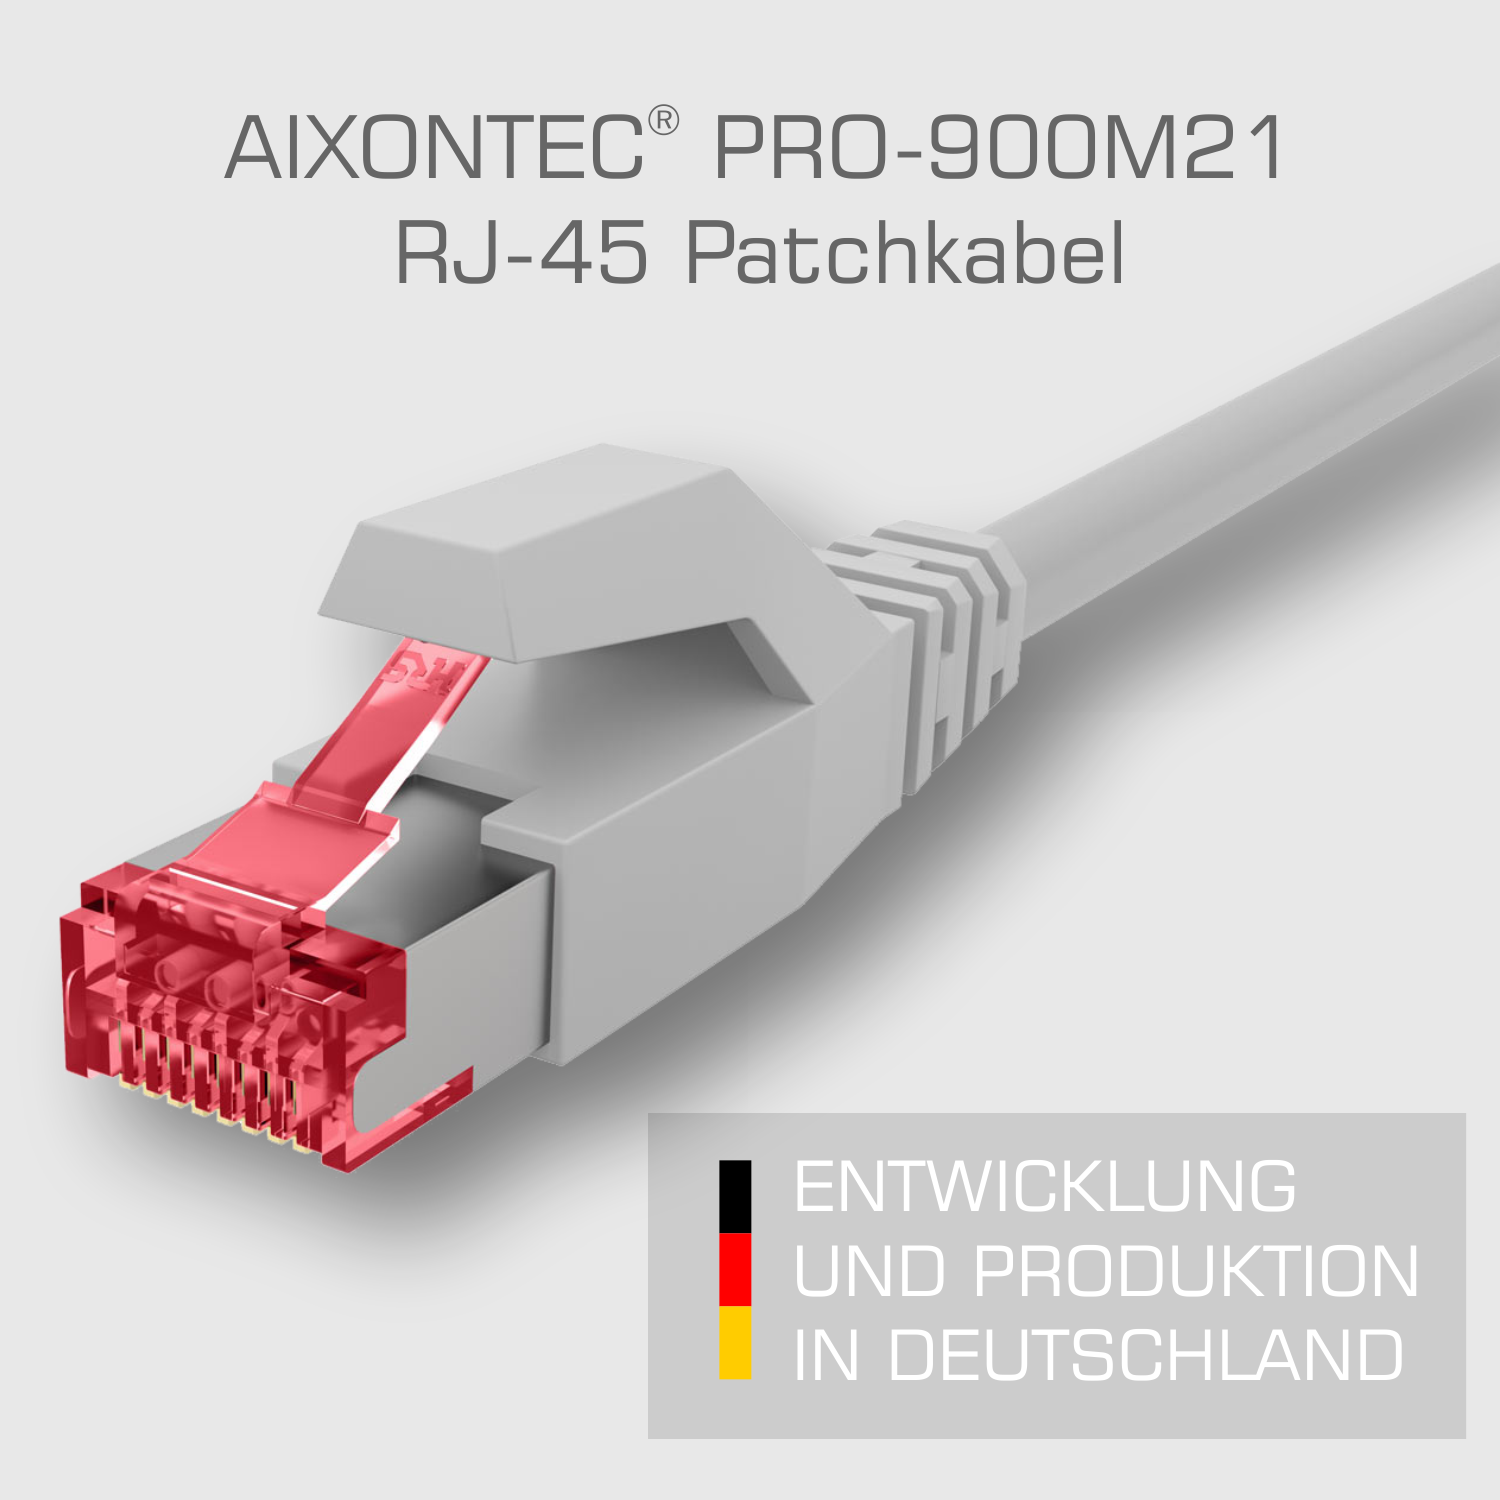 1,5m Ethernetkabel Netzwerkkabel, Gigabit, AIXONTEC 10 Lankabel Patchkabel m 1,5 RJ45